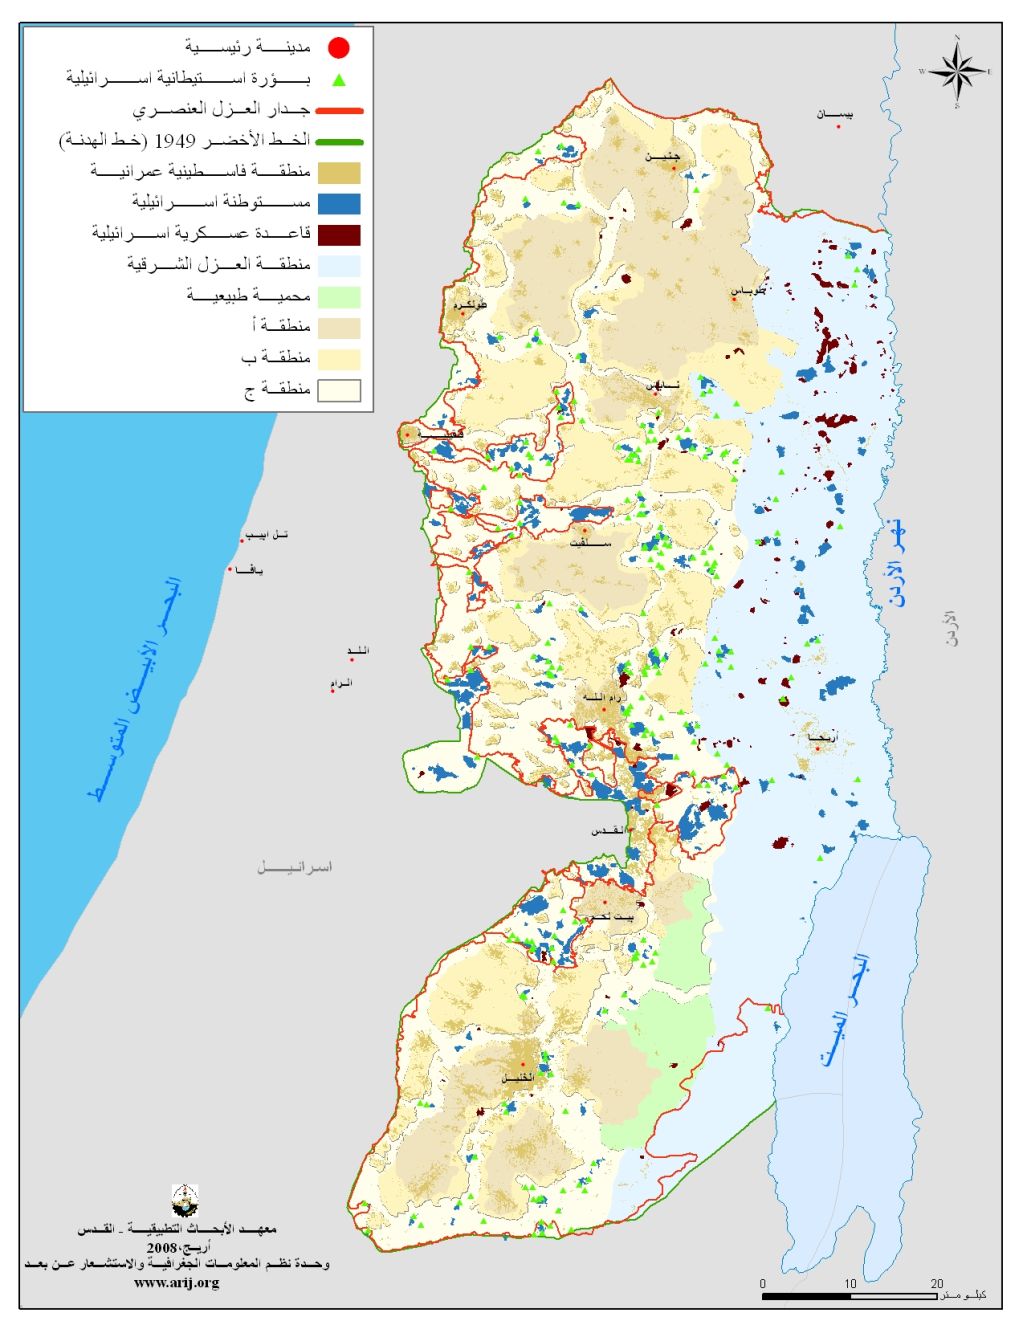 إذا ضمّت إسرائيل المنطقة “ج” فالعالم كله سيعاقبها